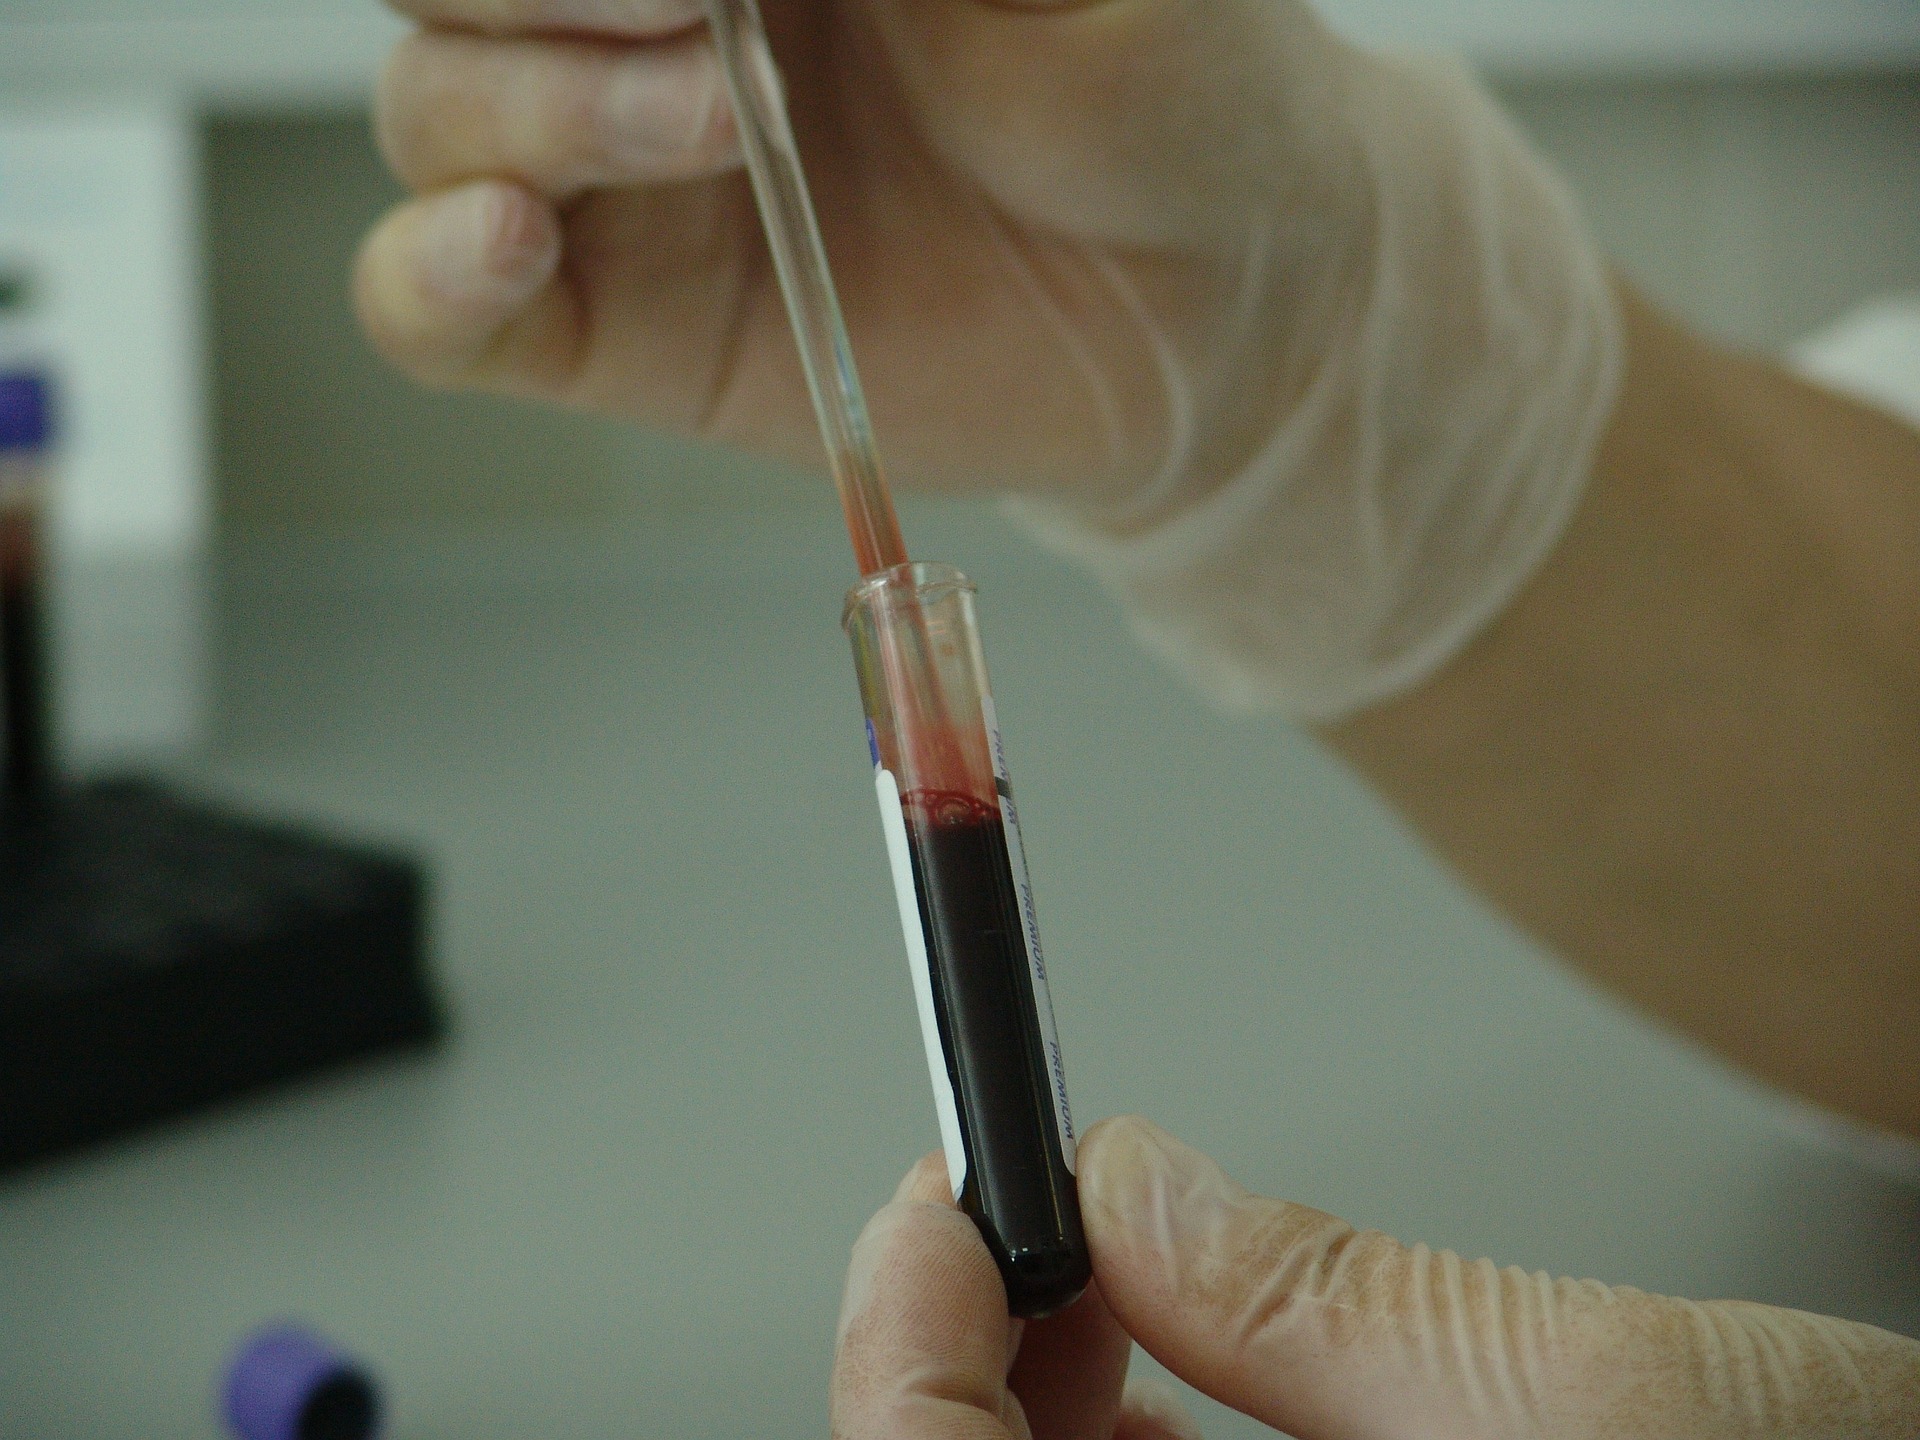 Blood Test Vial